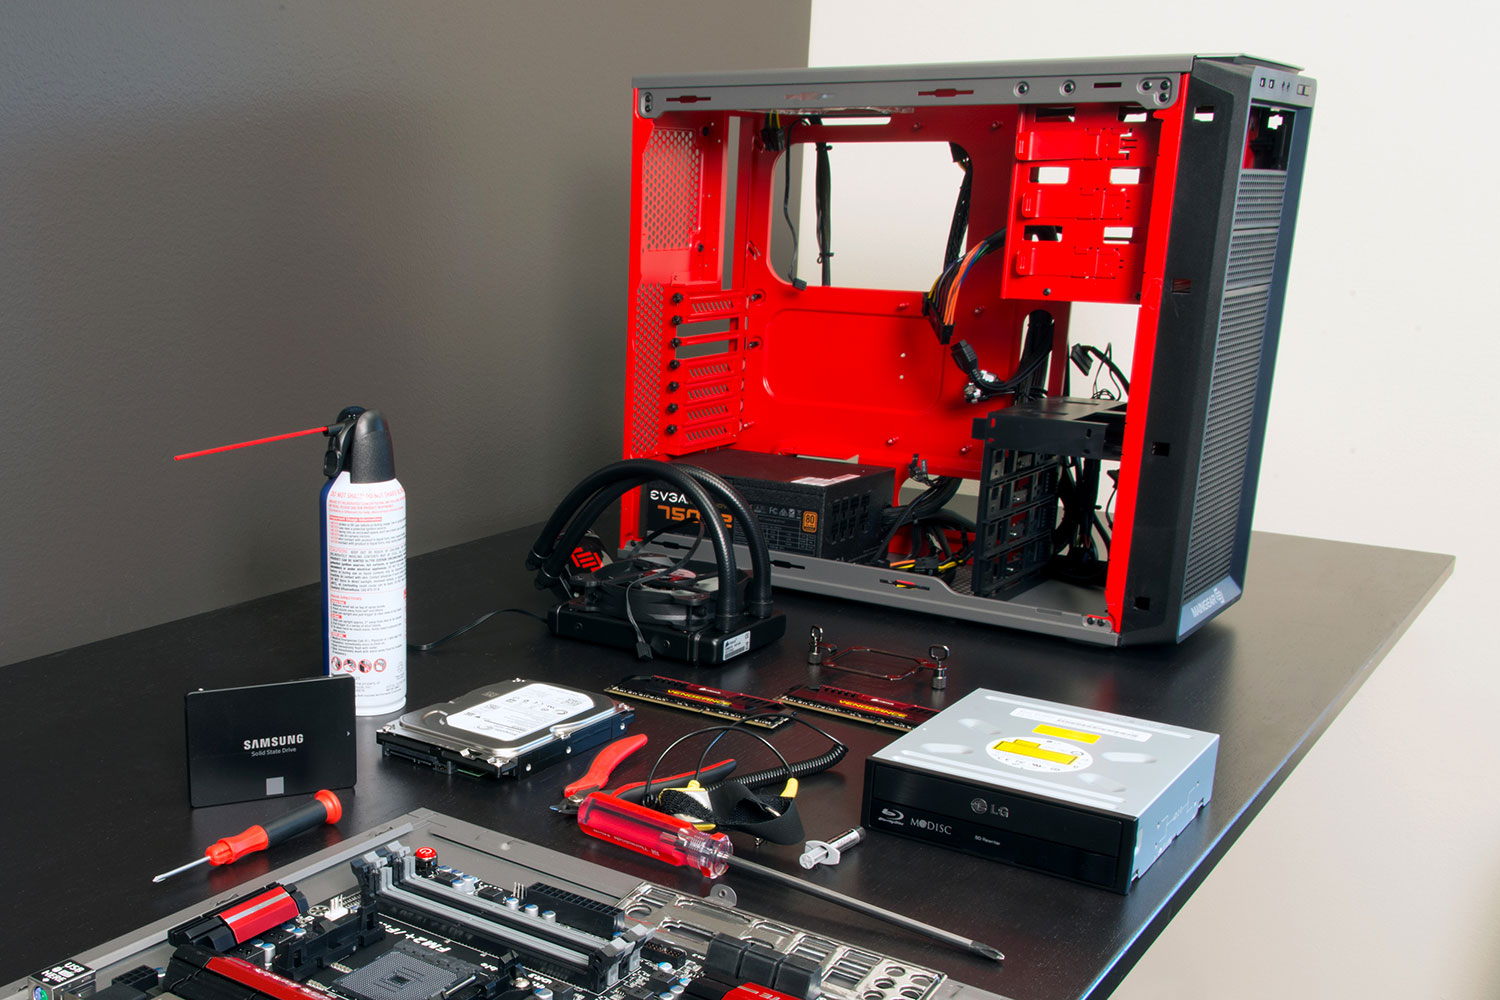 Corsair PC Build Kit review